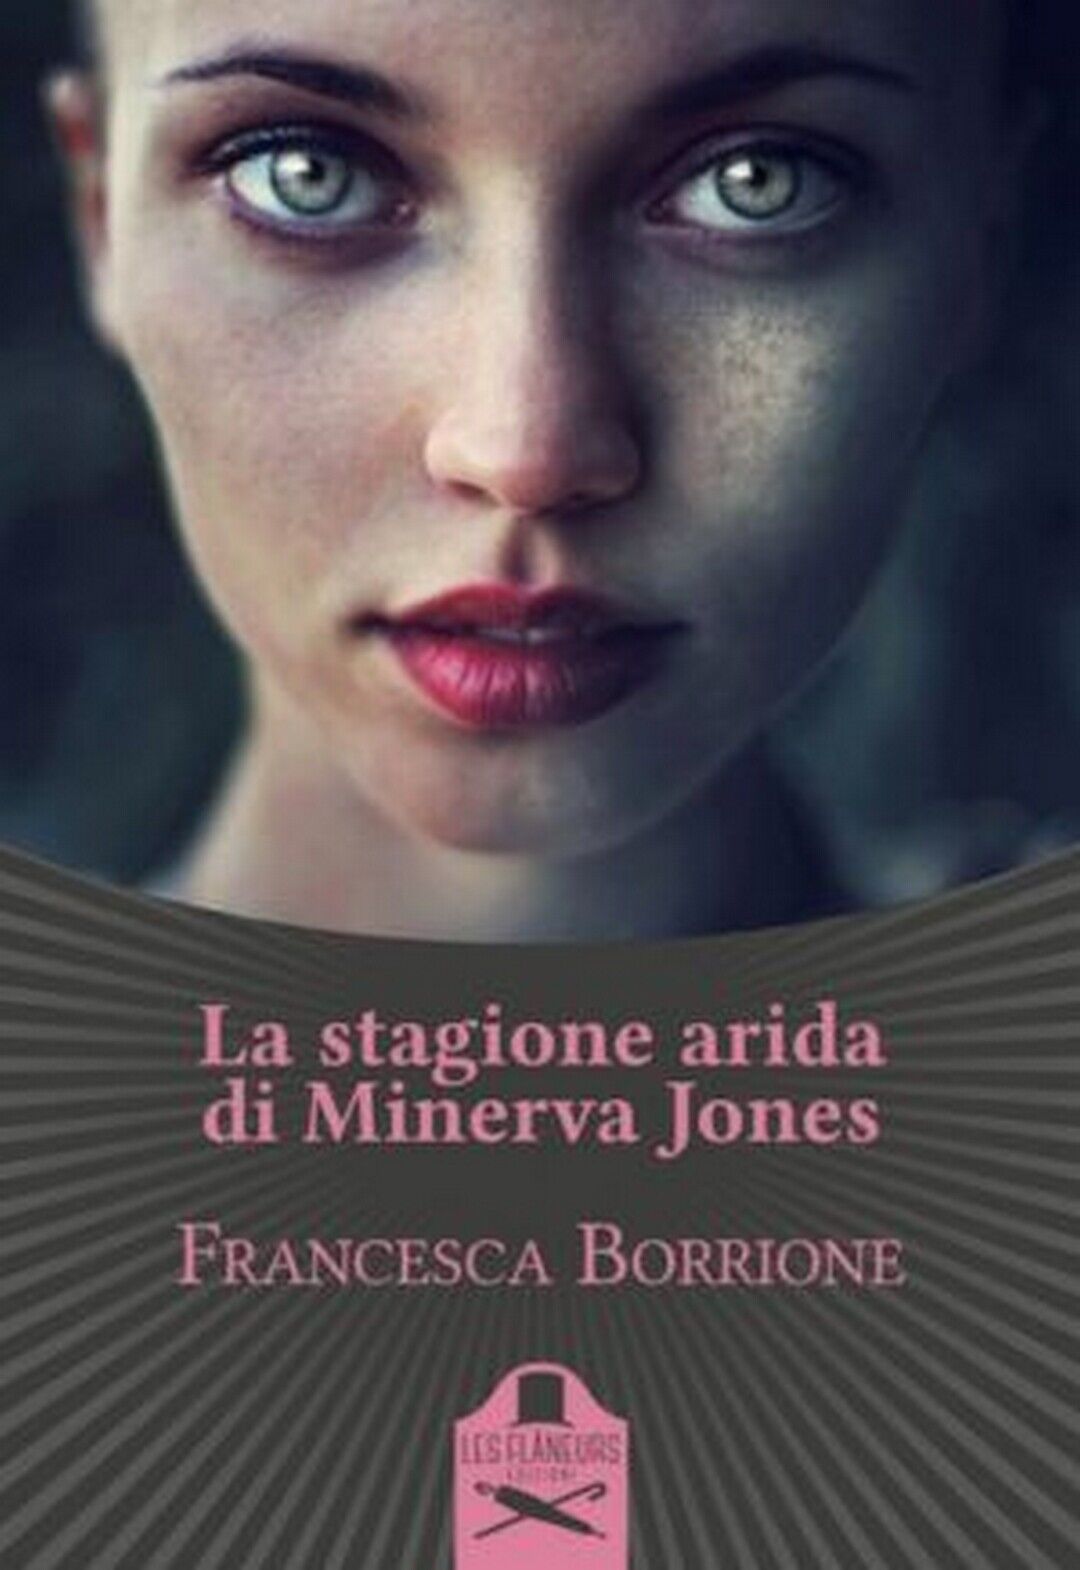 La stagione arida di Minerva Jones  di Francesca Borrione ,  Flaneurs